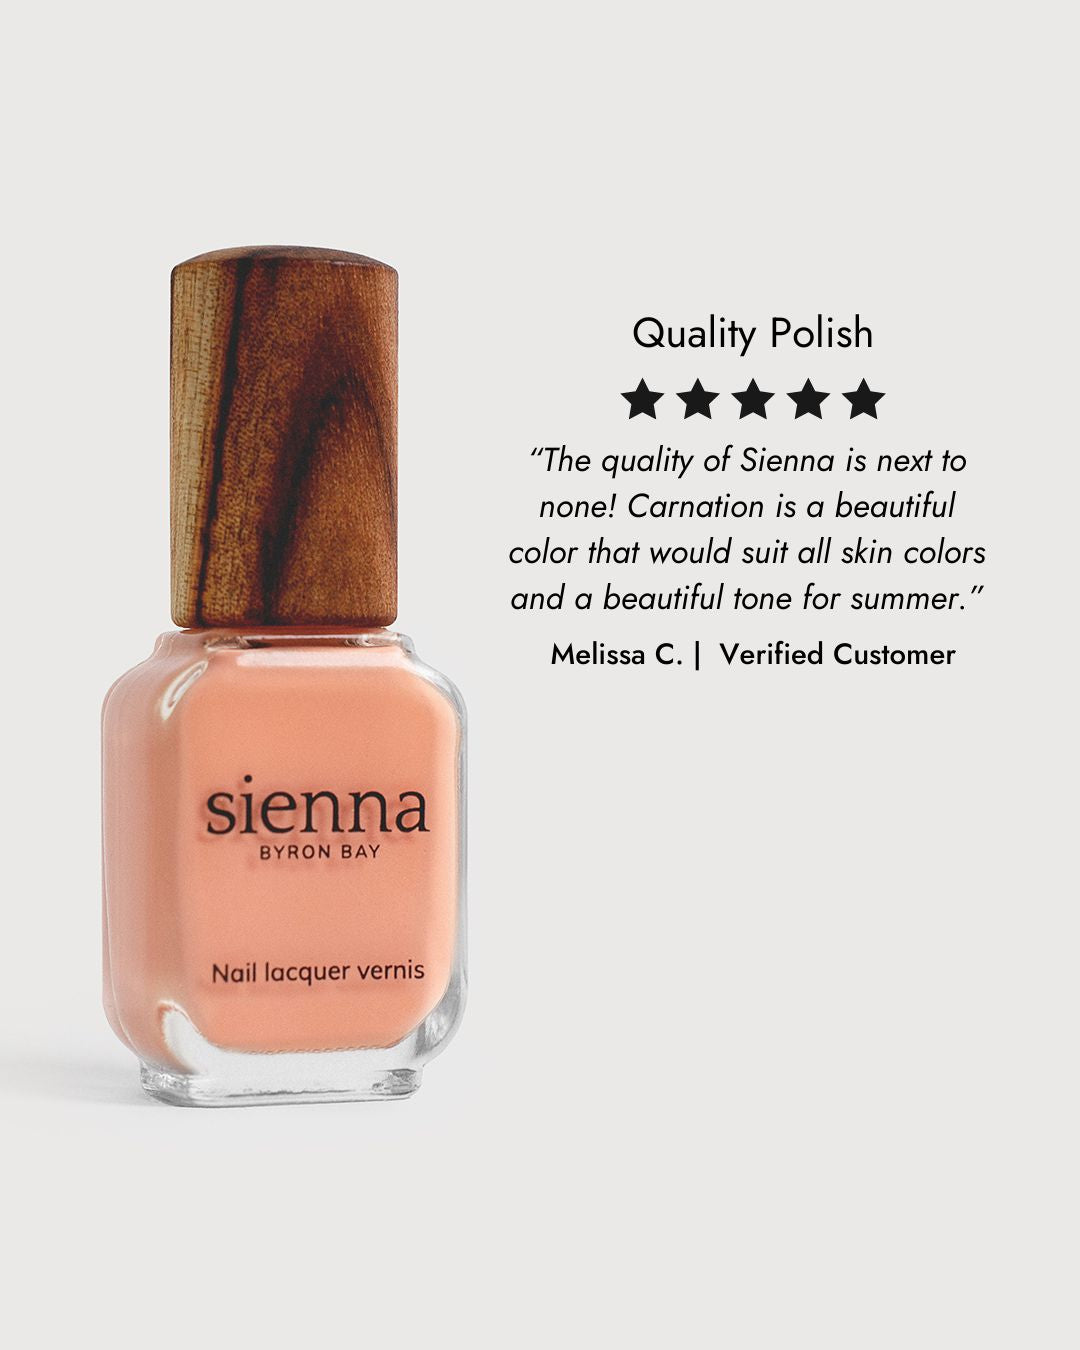 peach blush nail polish 5 star review